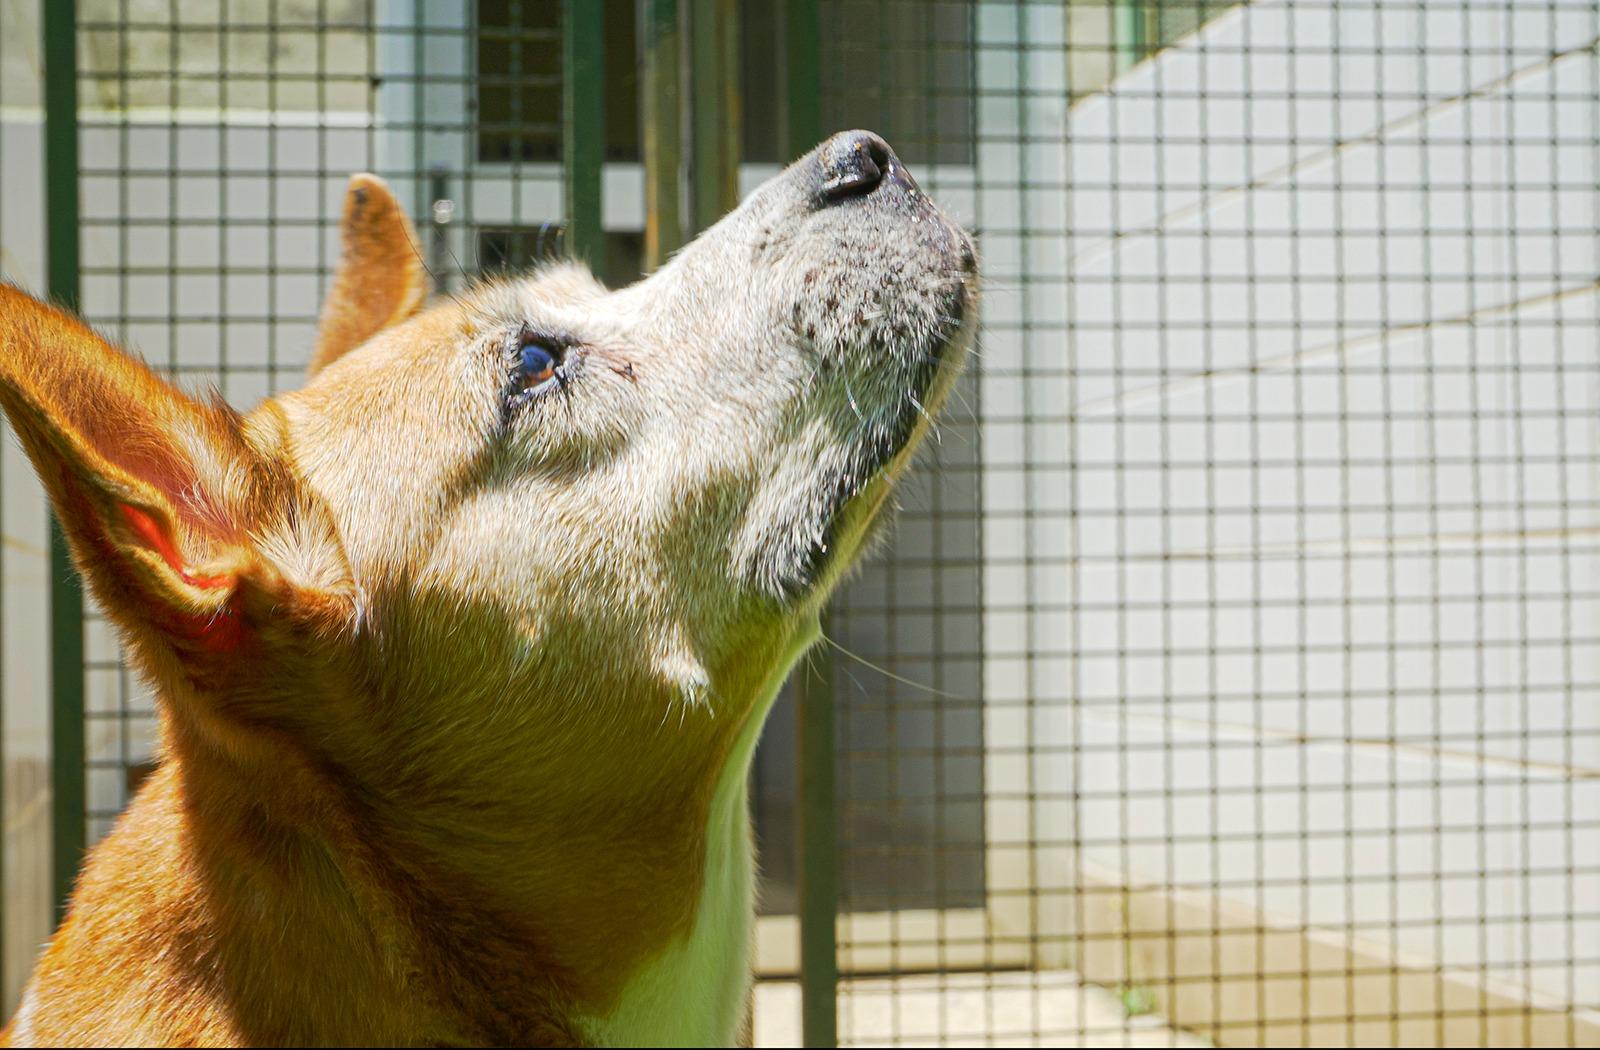 Segunda edição do Cuida Pet SP com serviços gratuitos para combater maus-tratos e abandono de animais